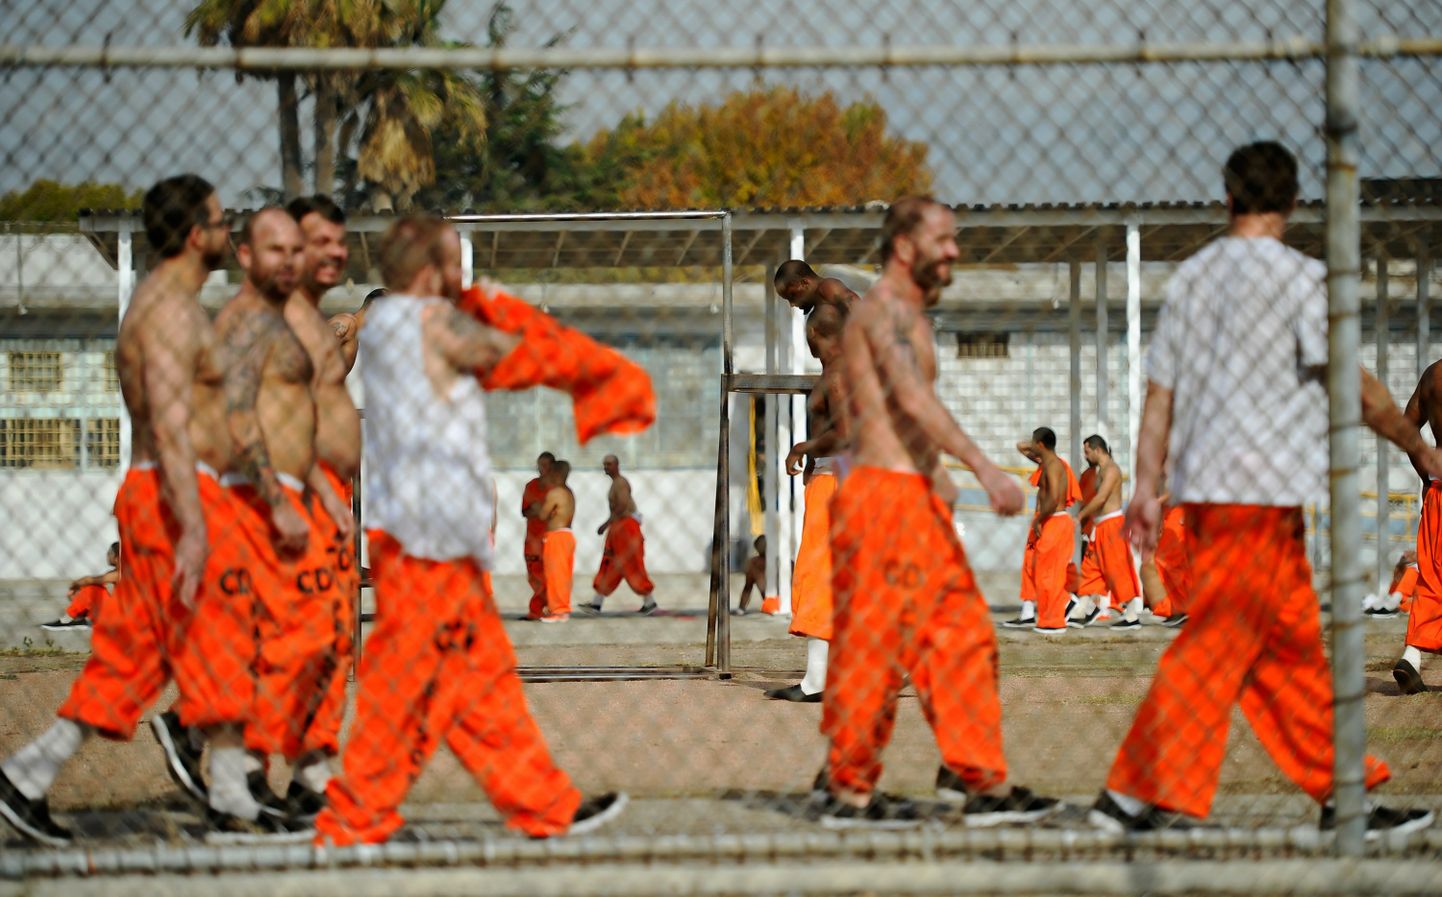 Vangid Ameerika Ühendriikides California osariigis Chino vangla hoovis. Erinevalt USA vangidest Eesti süüdimõistetud vanglahoovis särkis seljast võtta ei tohi.